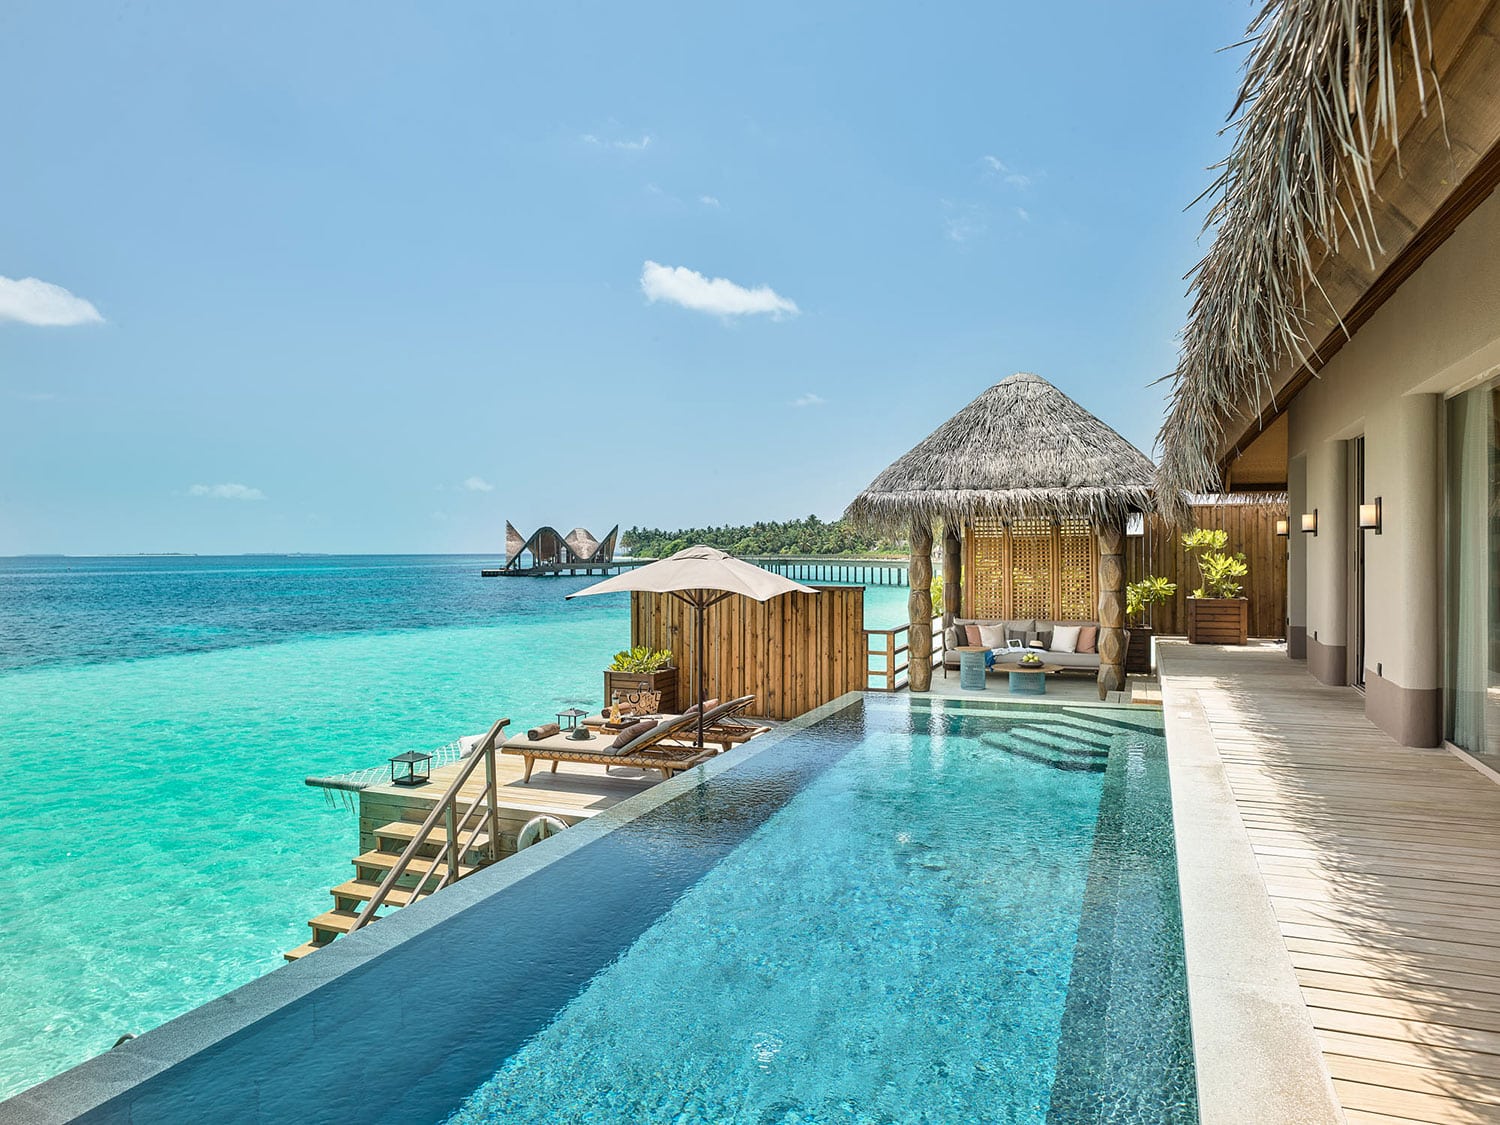 A pool view from a water villa at JOALI Maldives.